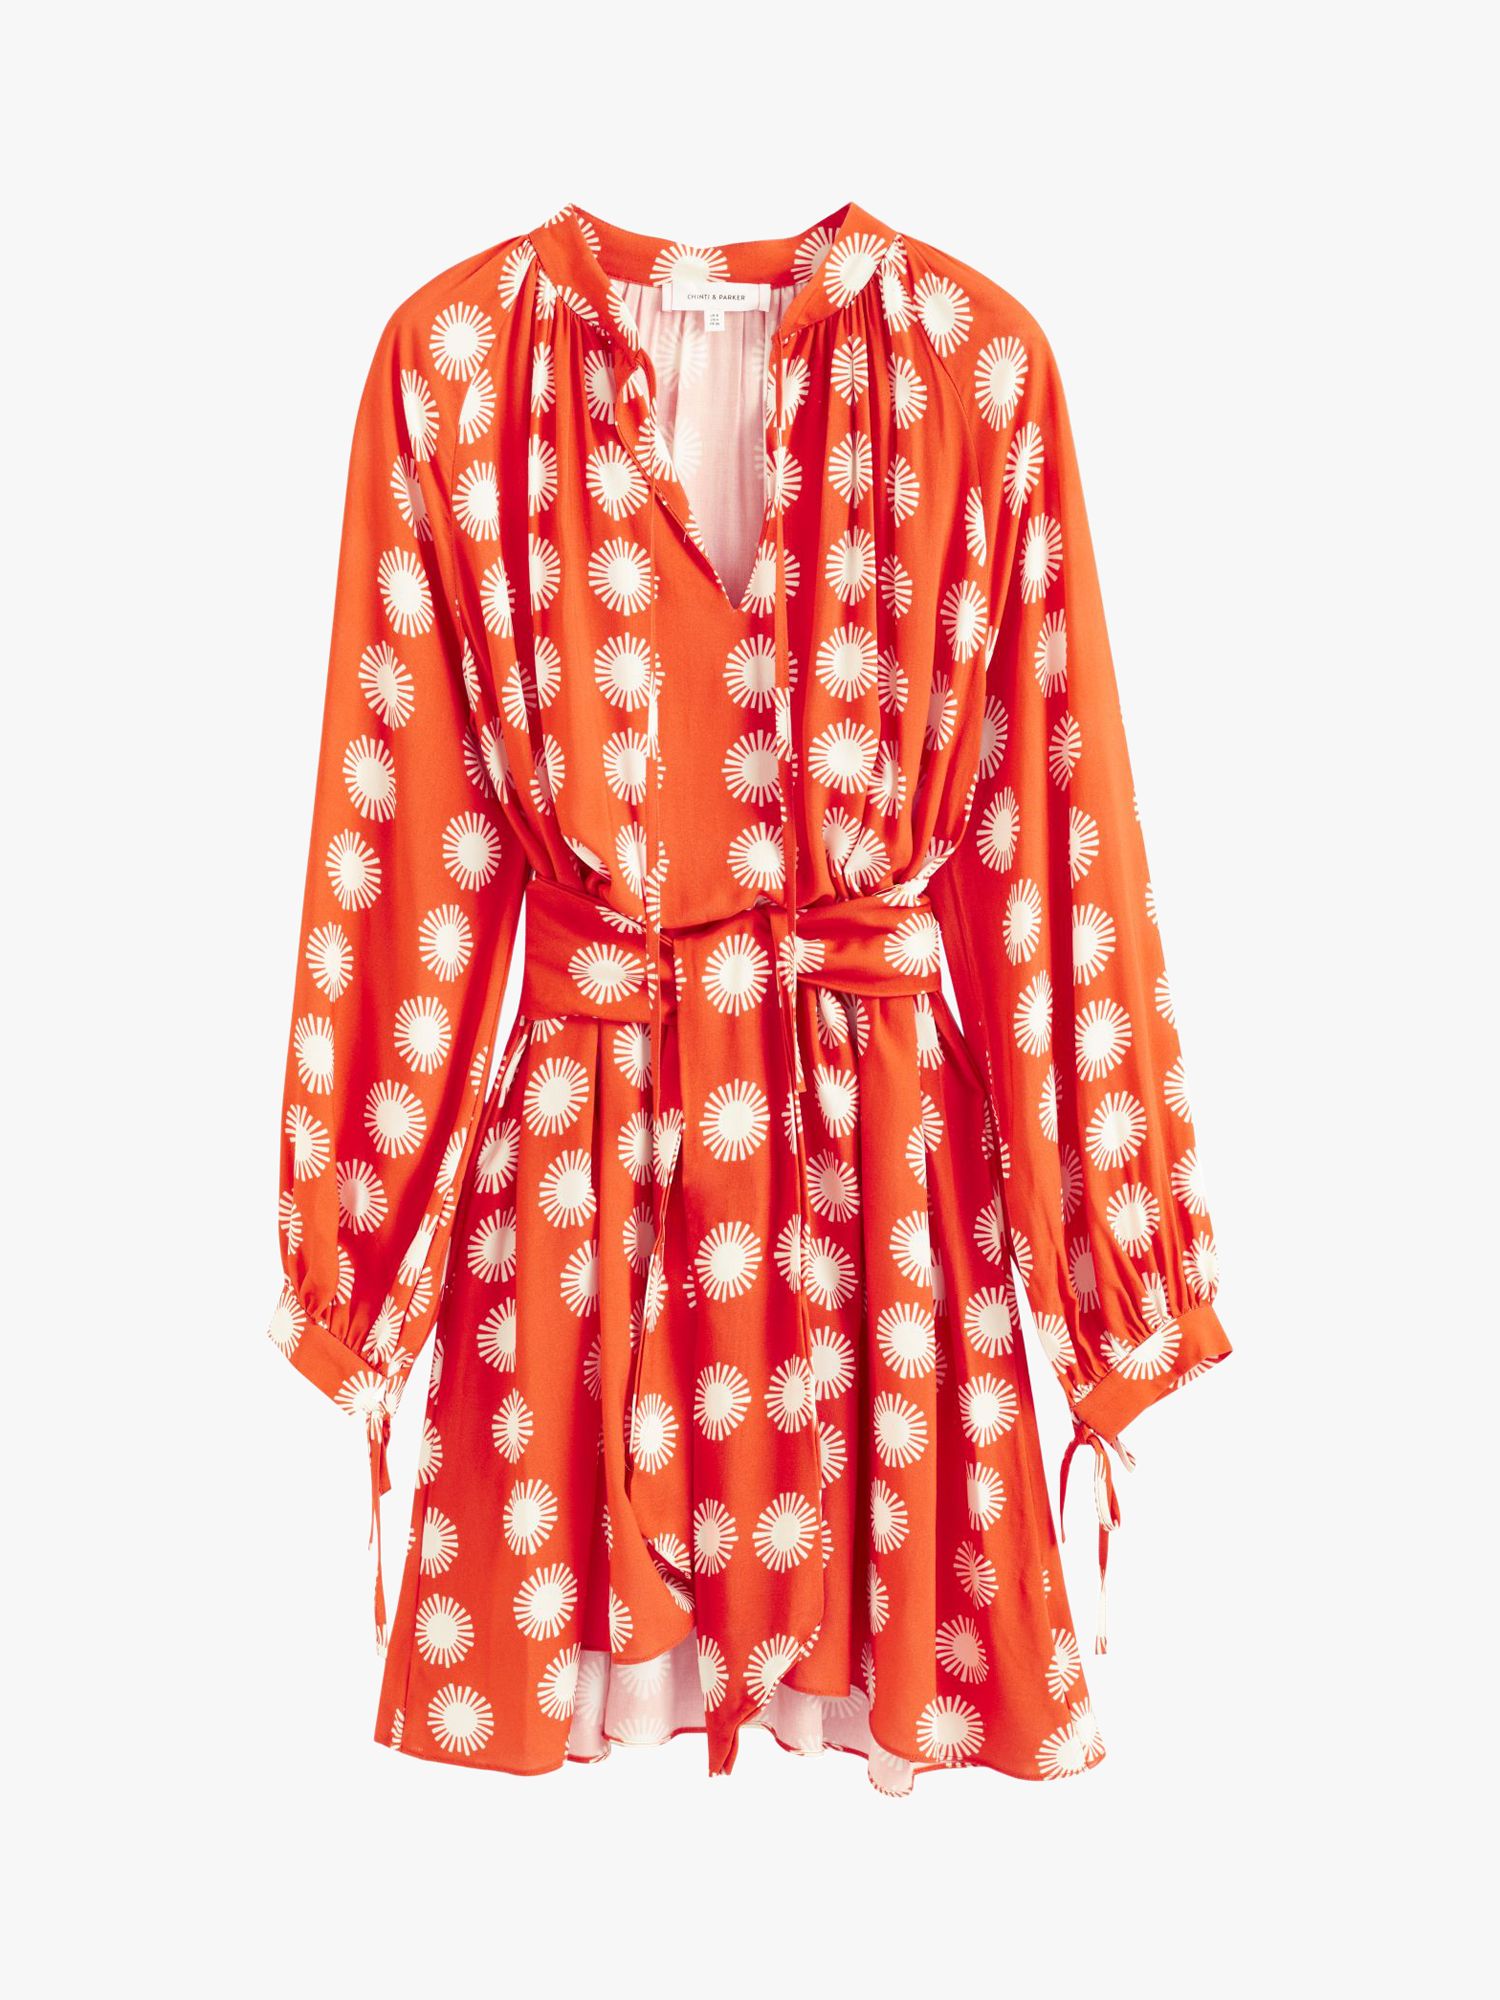 Chinti & Parker Ile De Re Mini Dress, Orange/Cream, 6